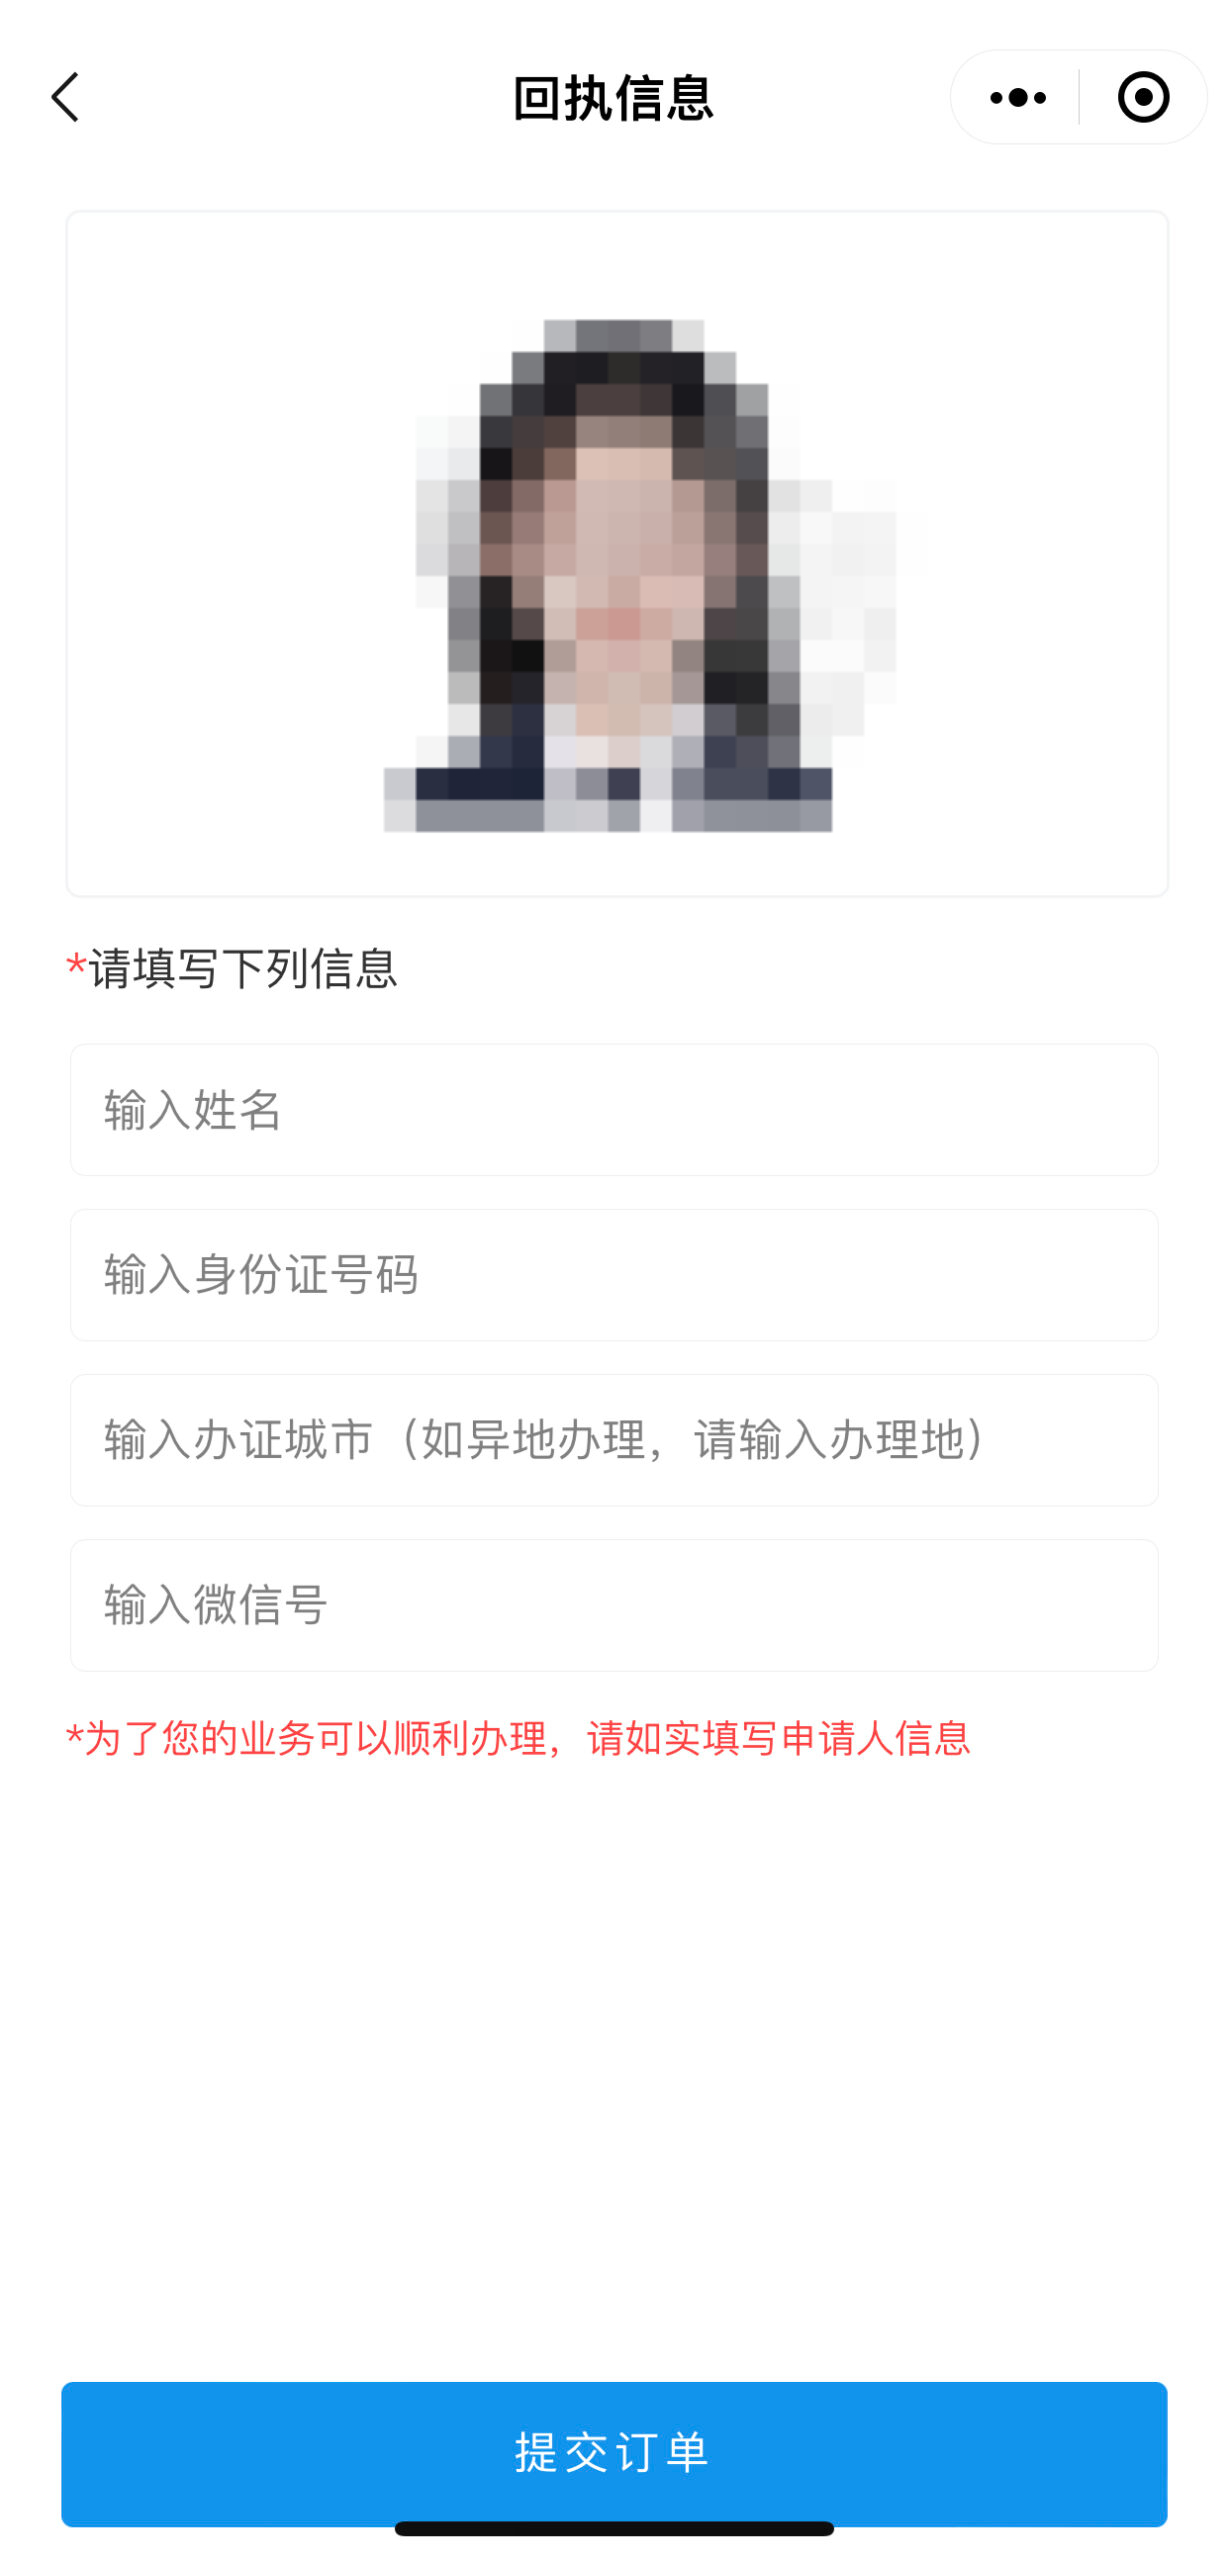 深圳市身份证照片回执